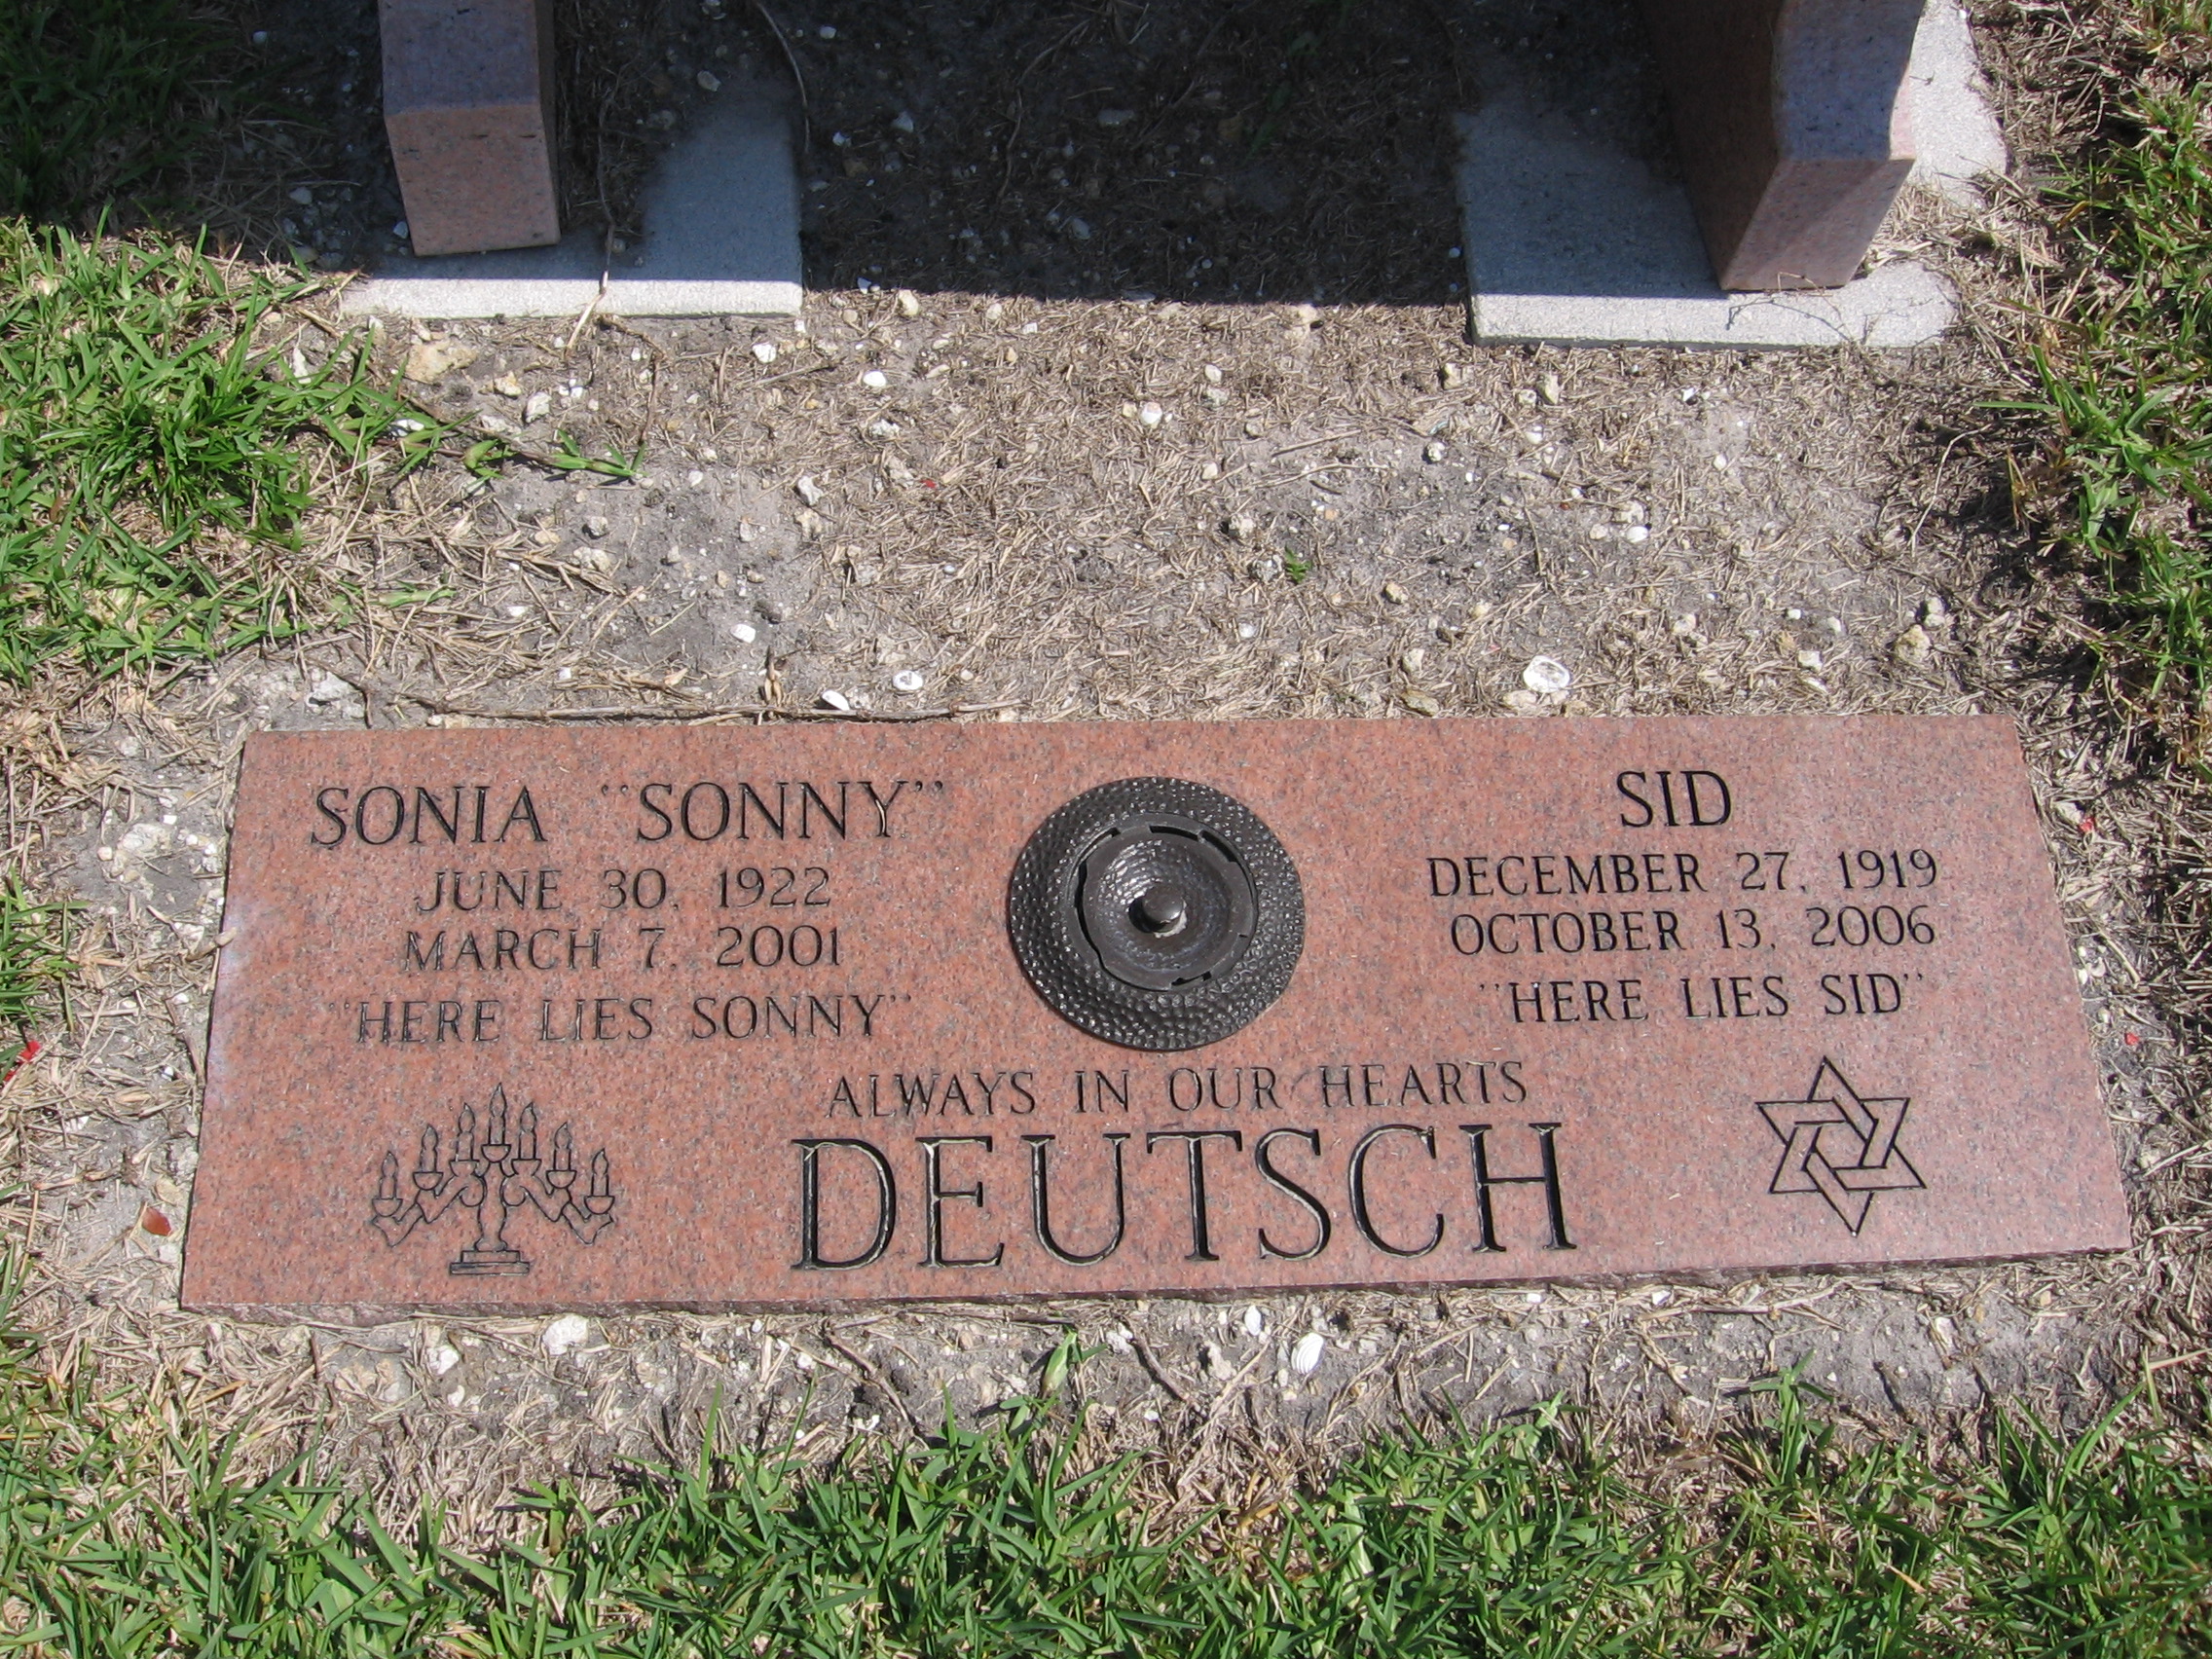 Sonia "Sonny" Deutsch